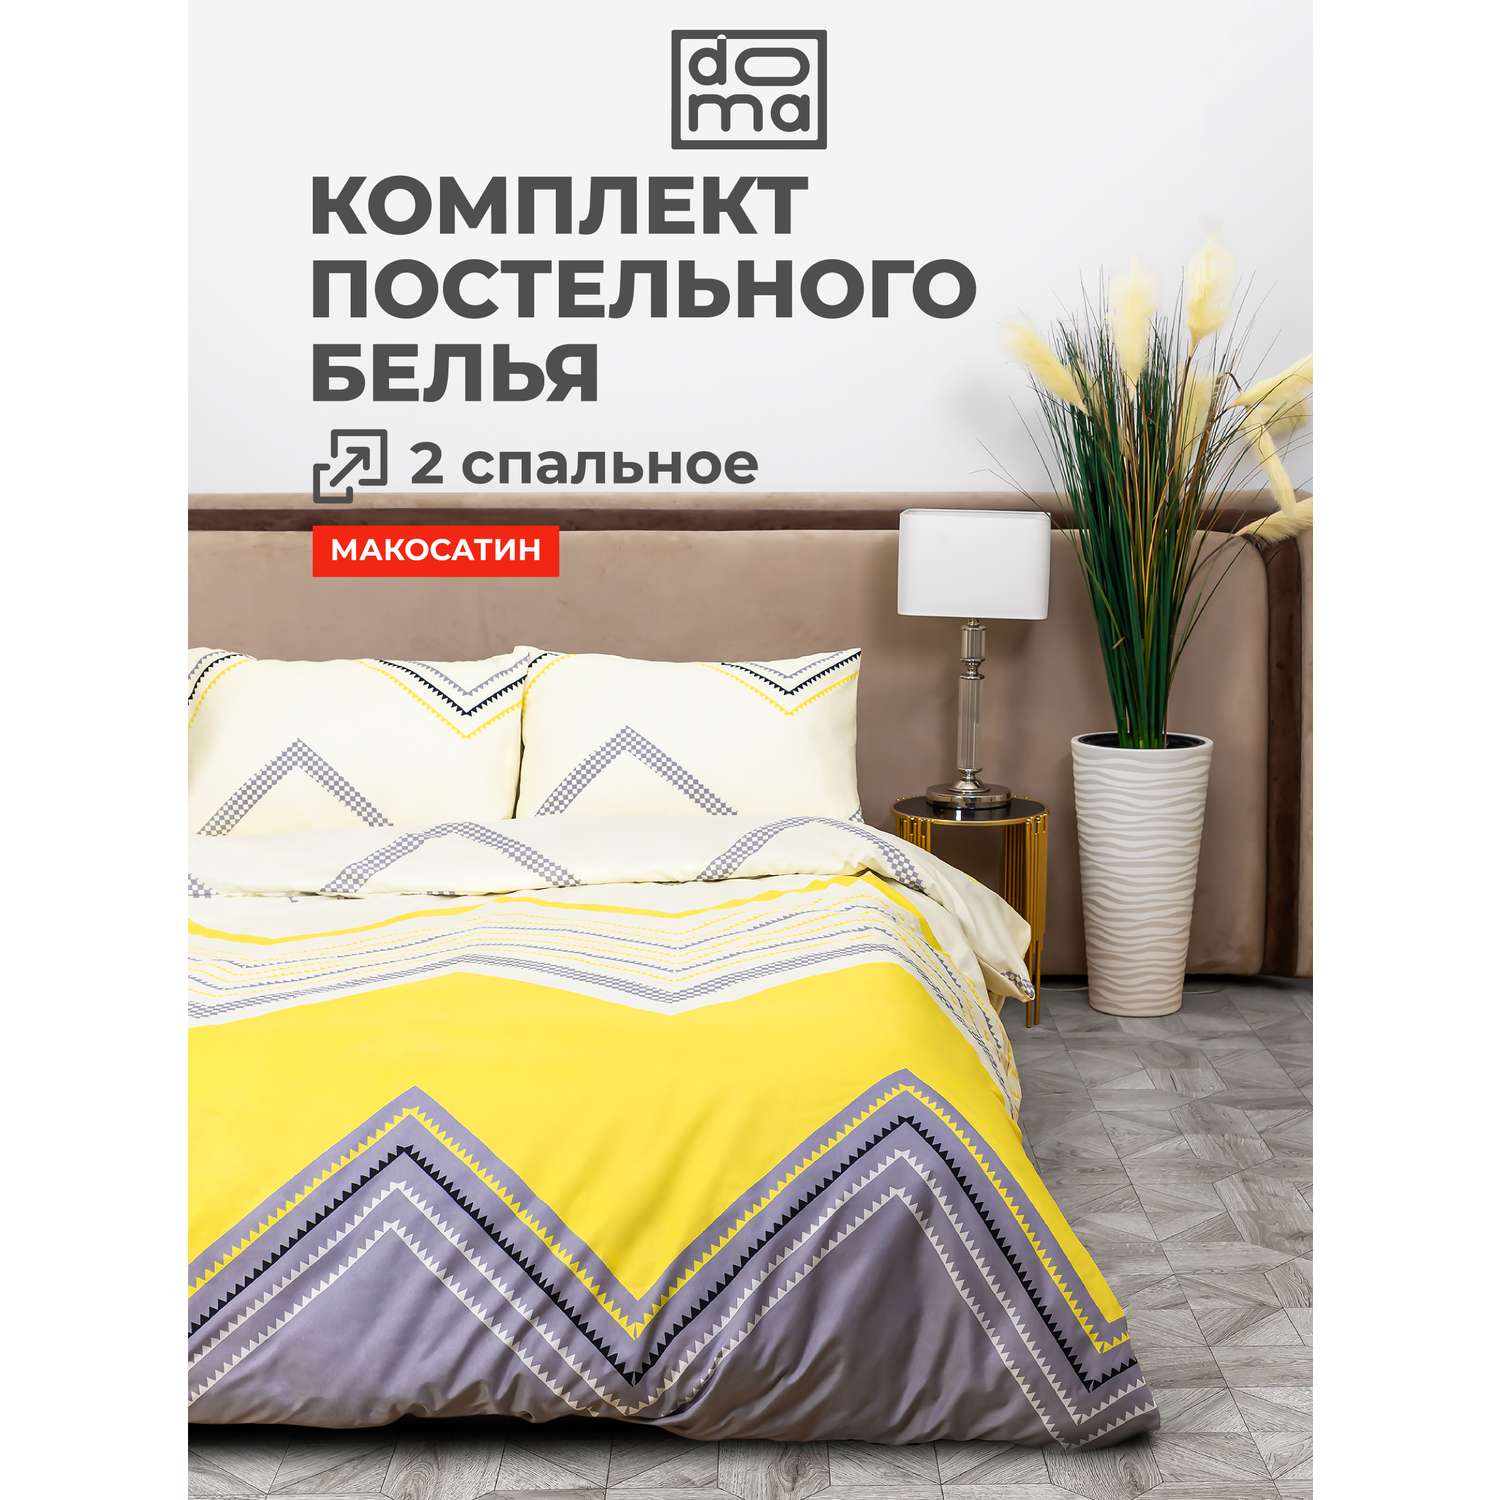 Комплект постельного белья Doma 2 спальное Kuban микрофибра - фото 1